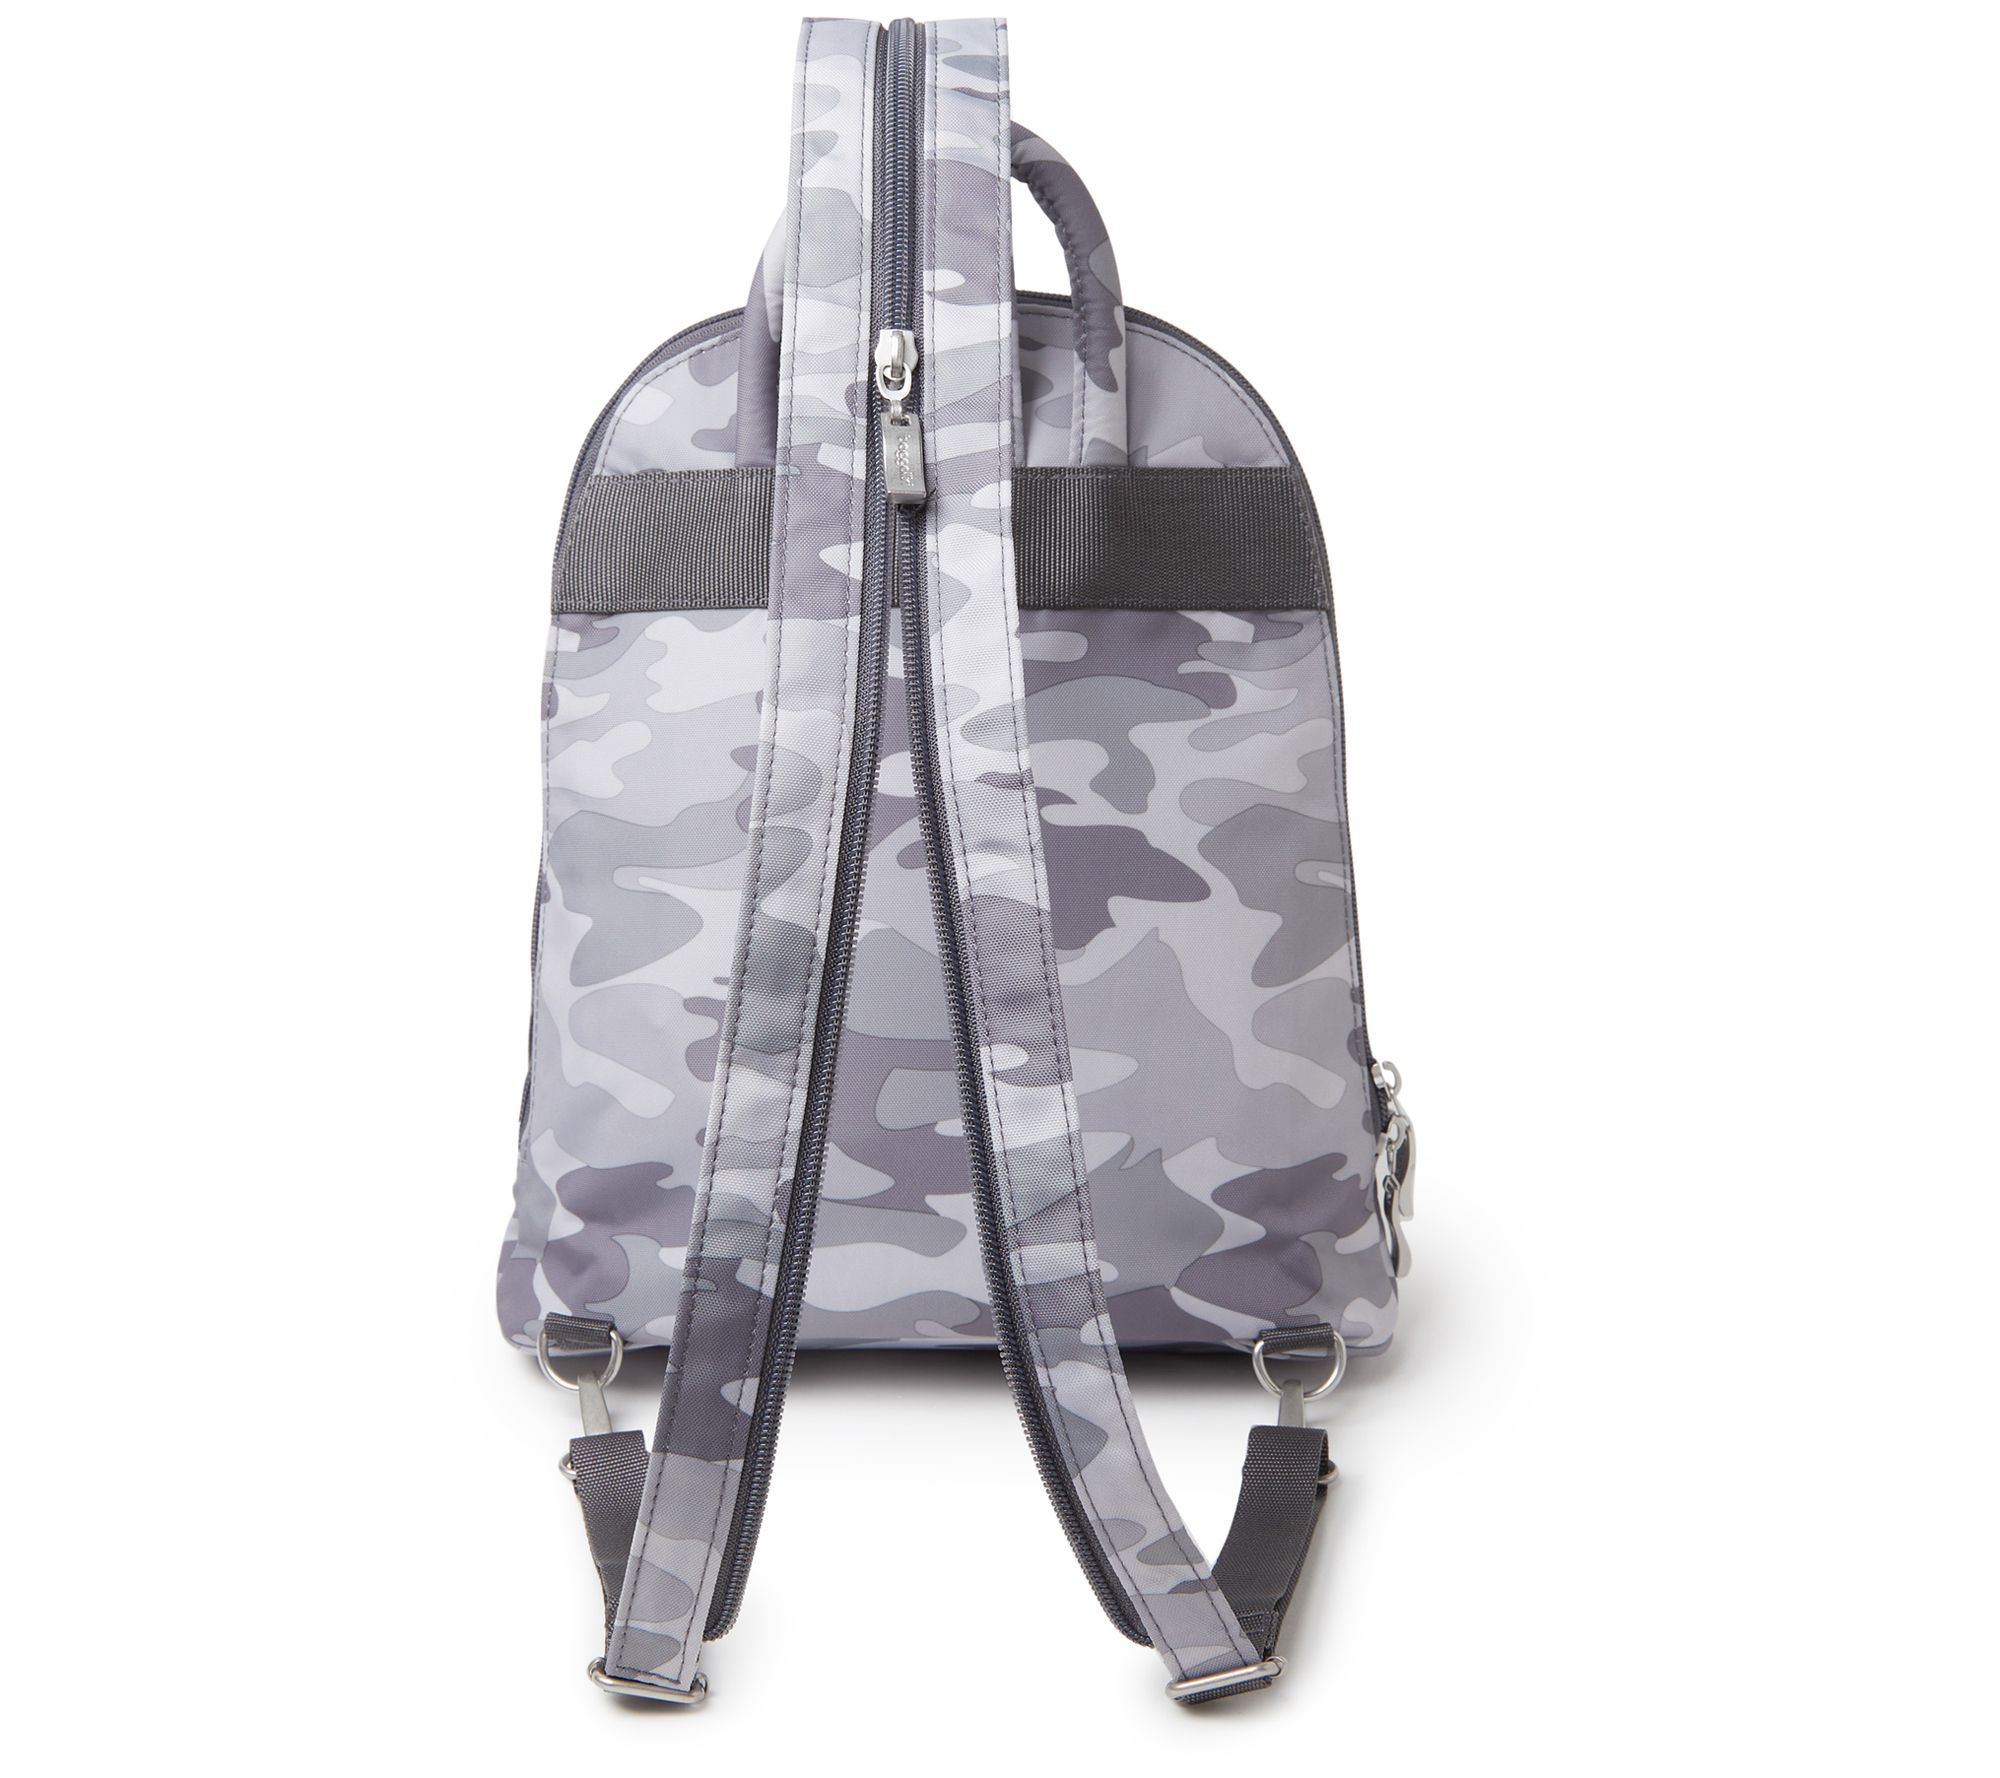 Pen + Gear backpack charm